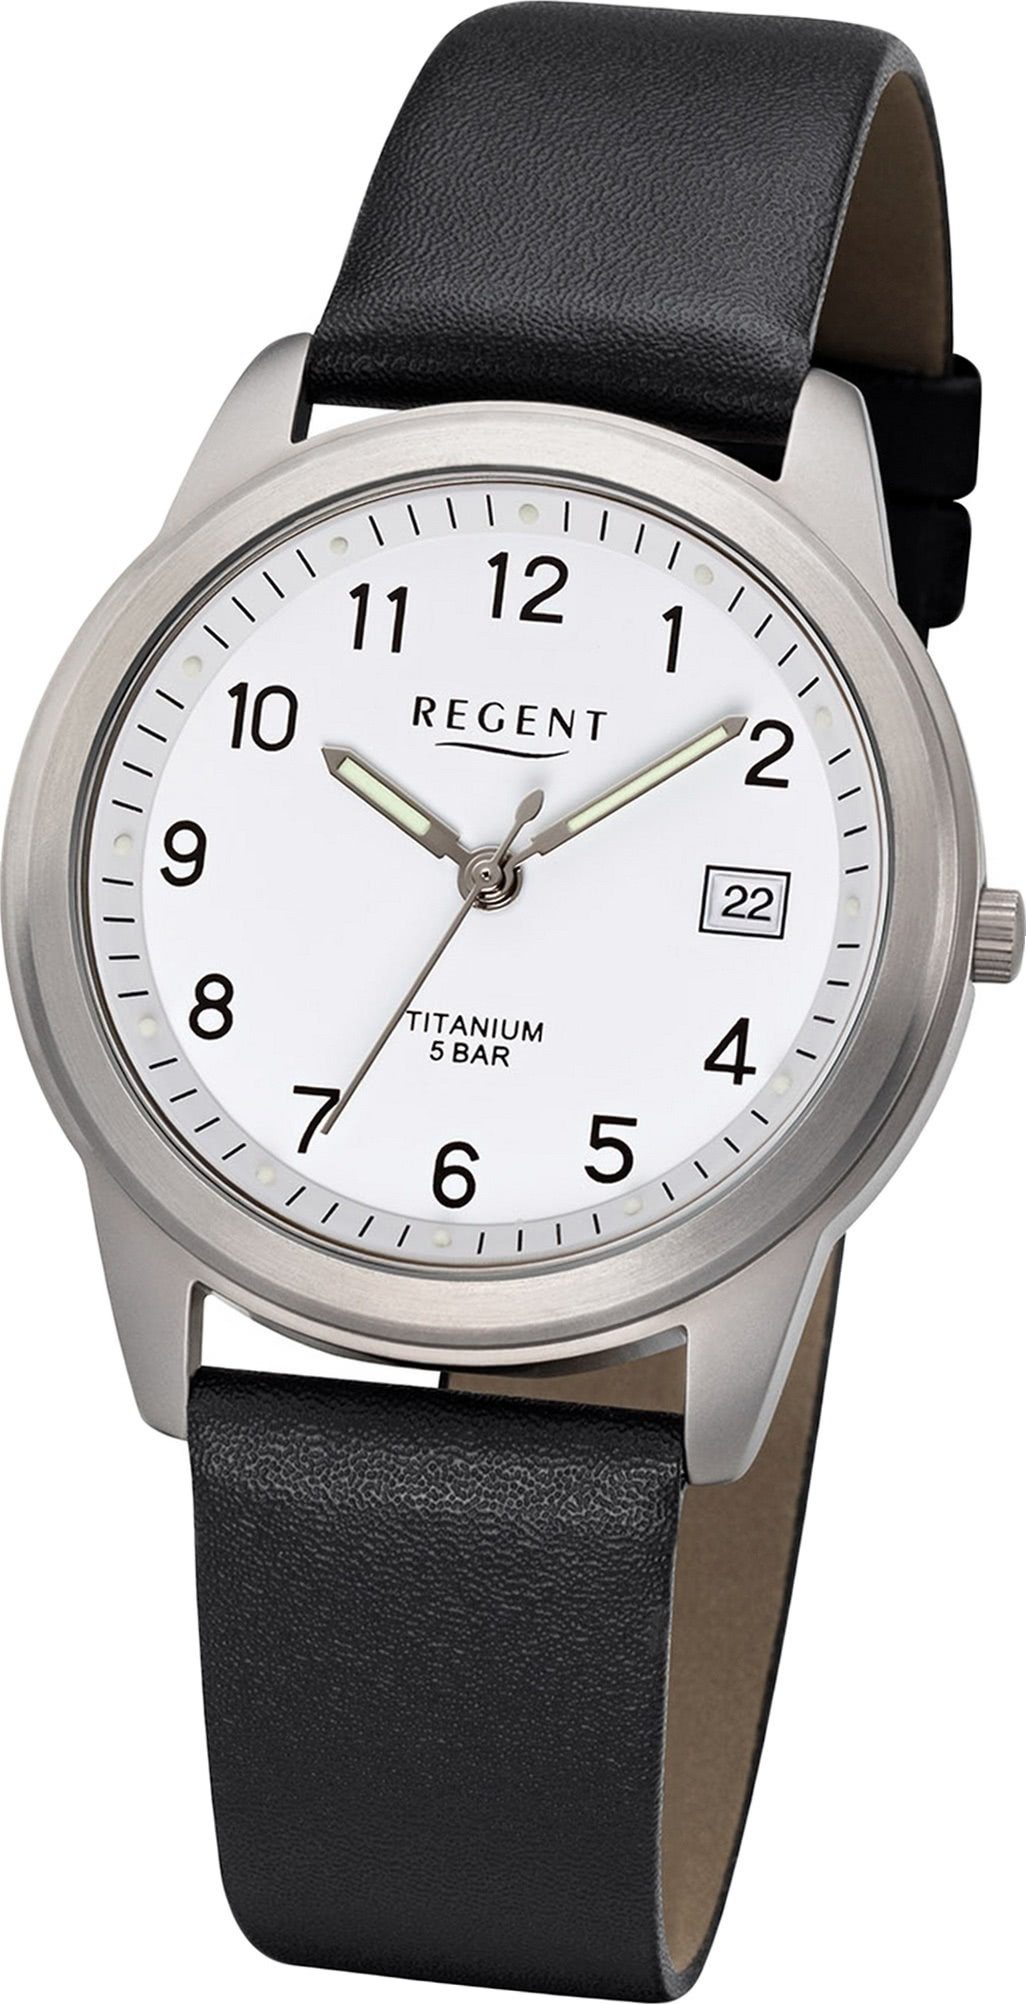 Herren Uhren Regent Quarzuhr D2URF683 Regent Leder Herren Uhr F-683 Analog, Herrenuhr mit Lederarmband, rundes Gehäuse, mittel (